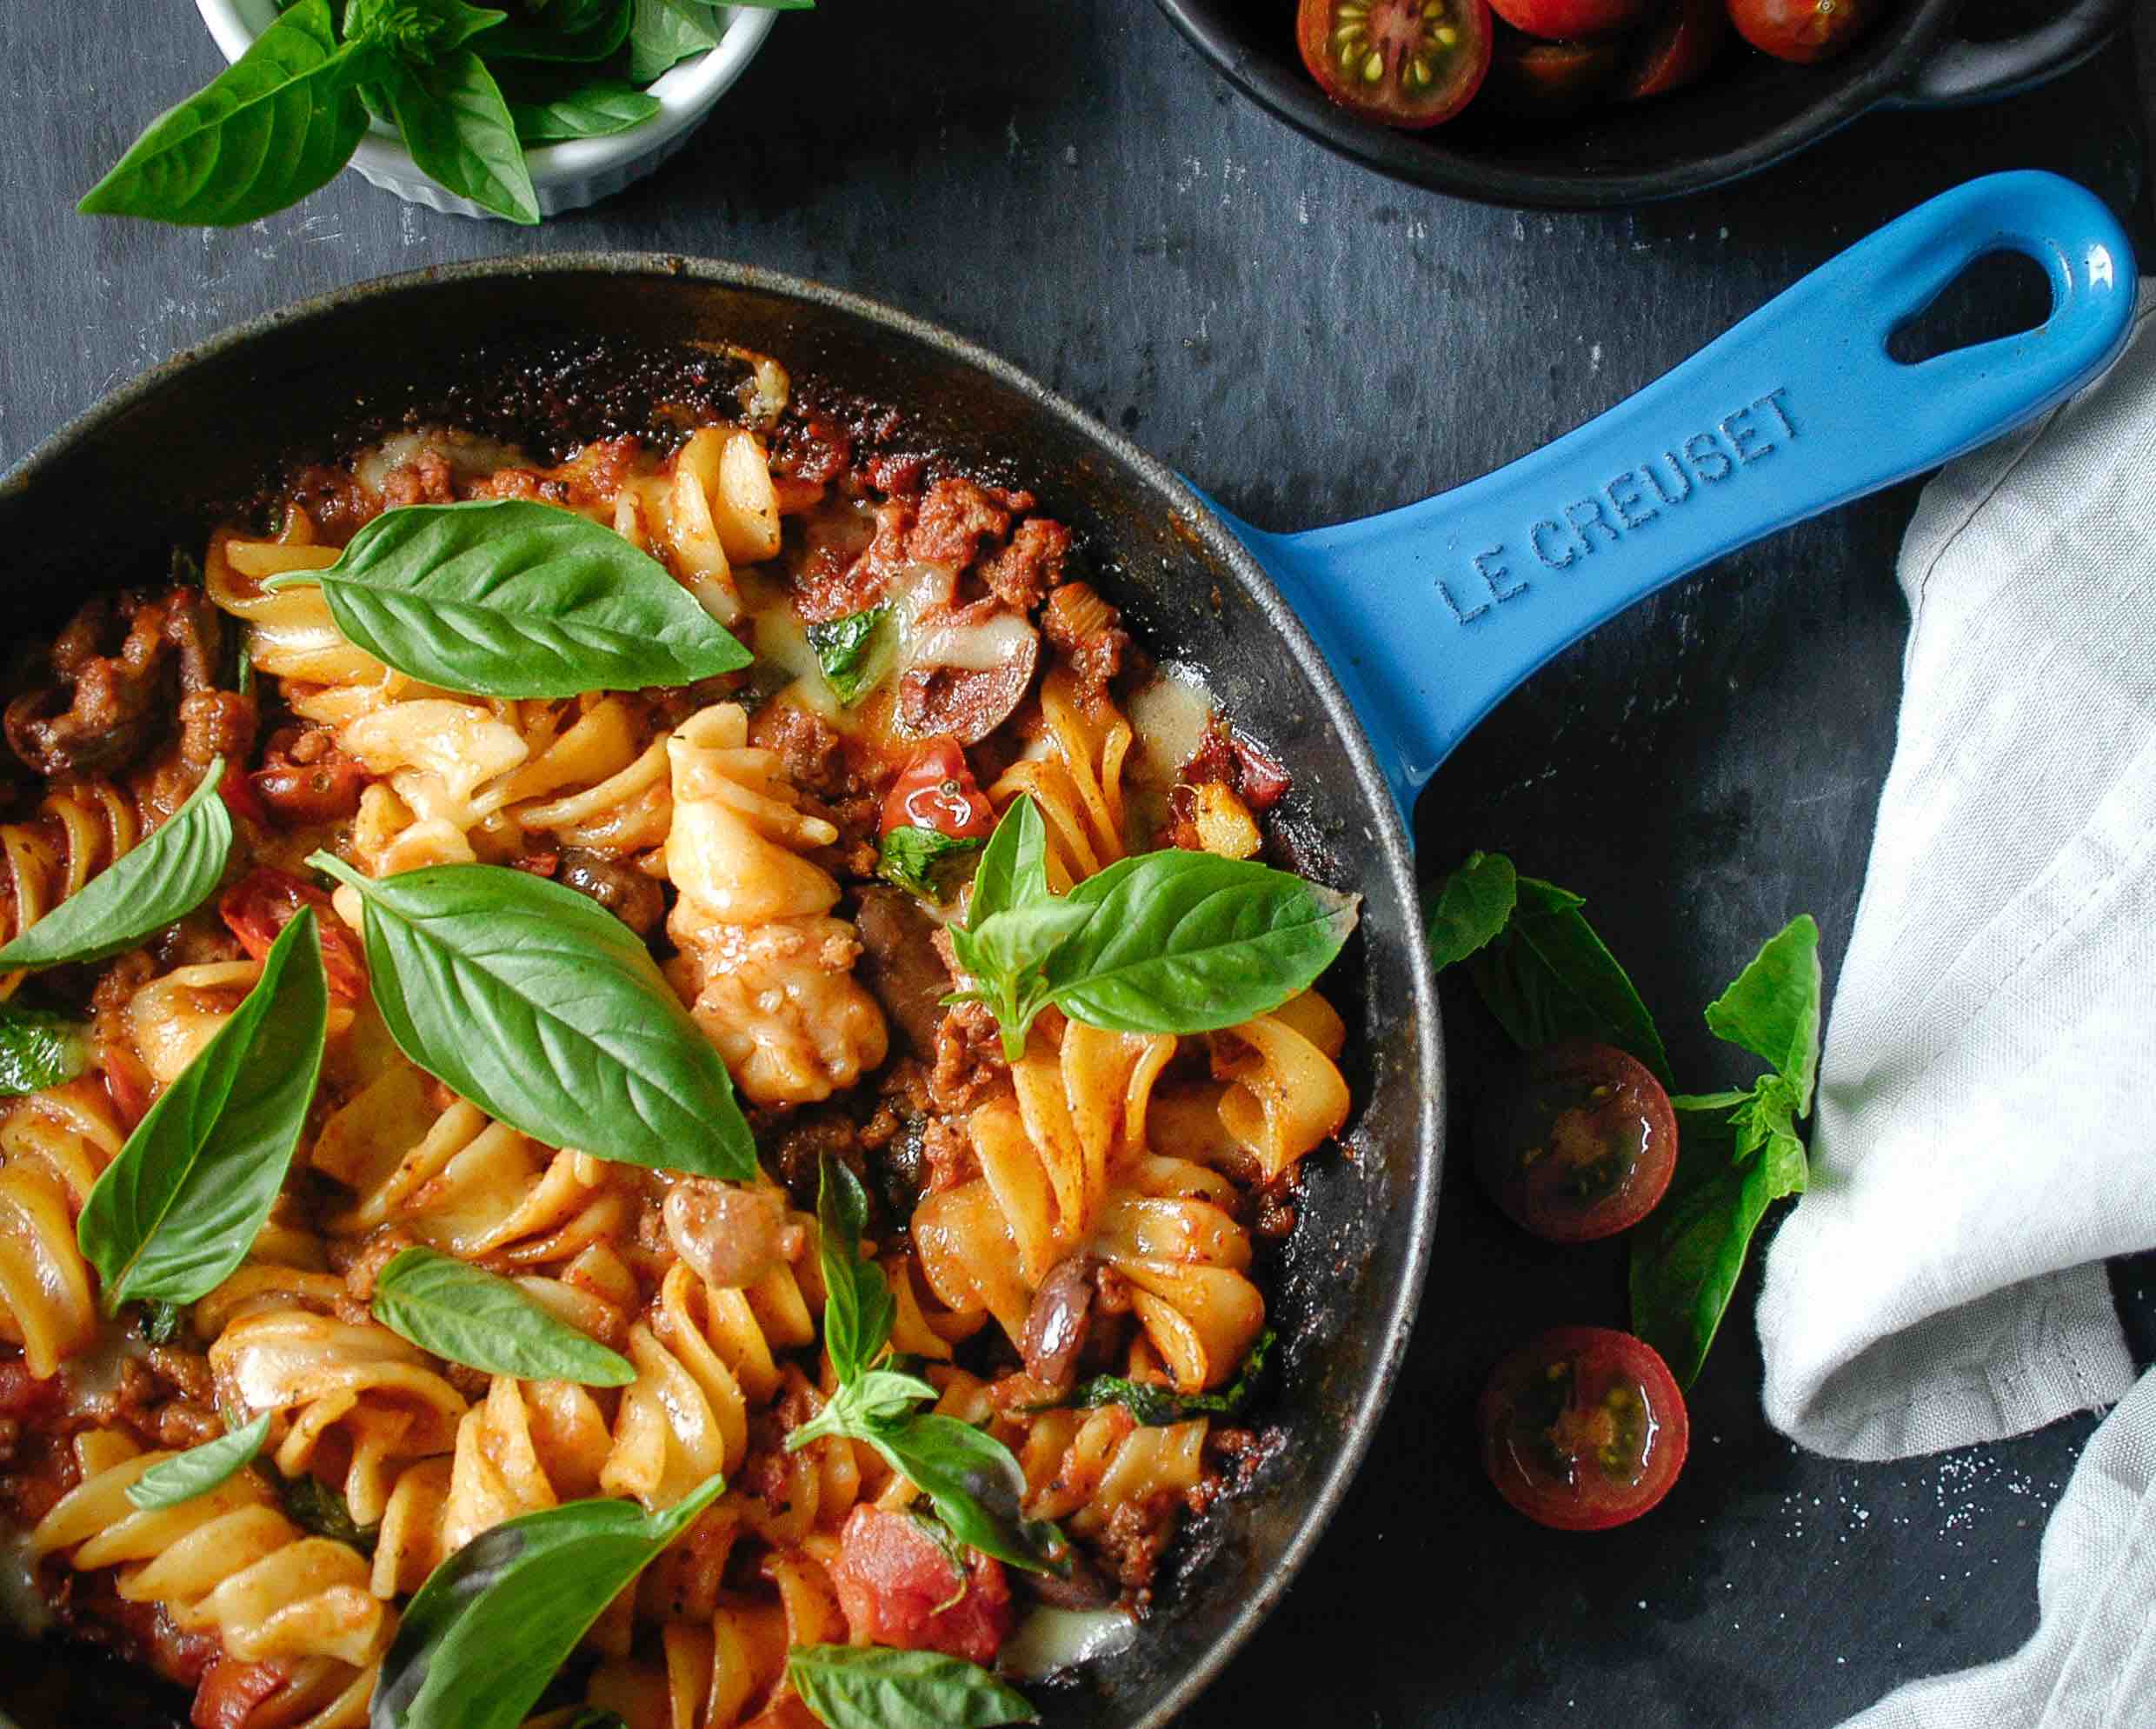 Minimum effort, maximum reward with this delicious one pan pasta!